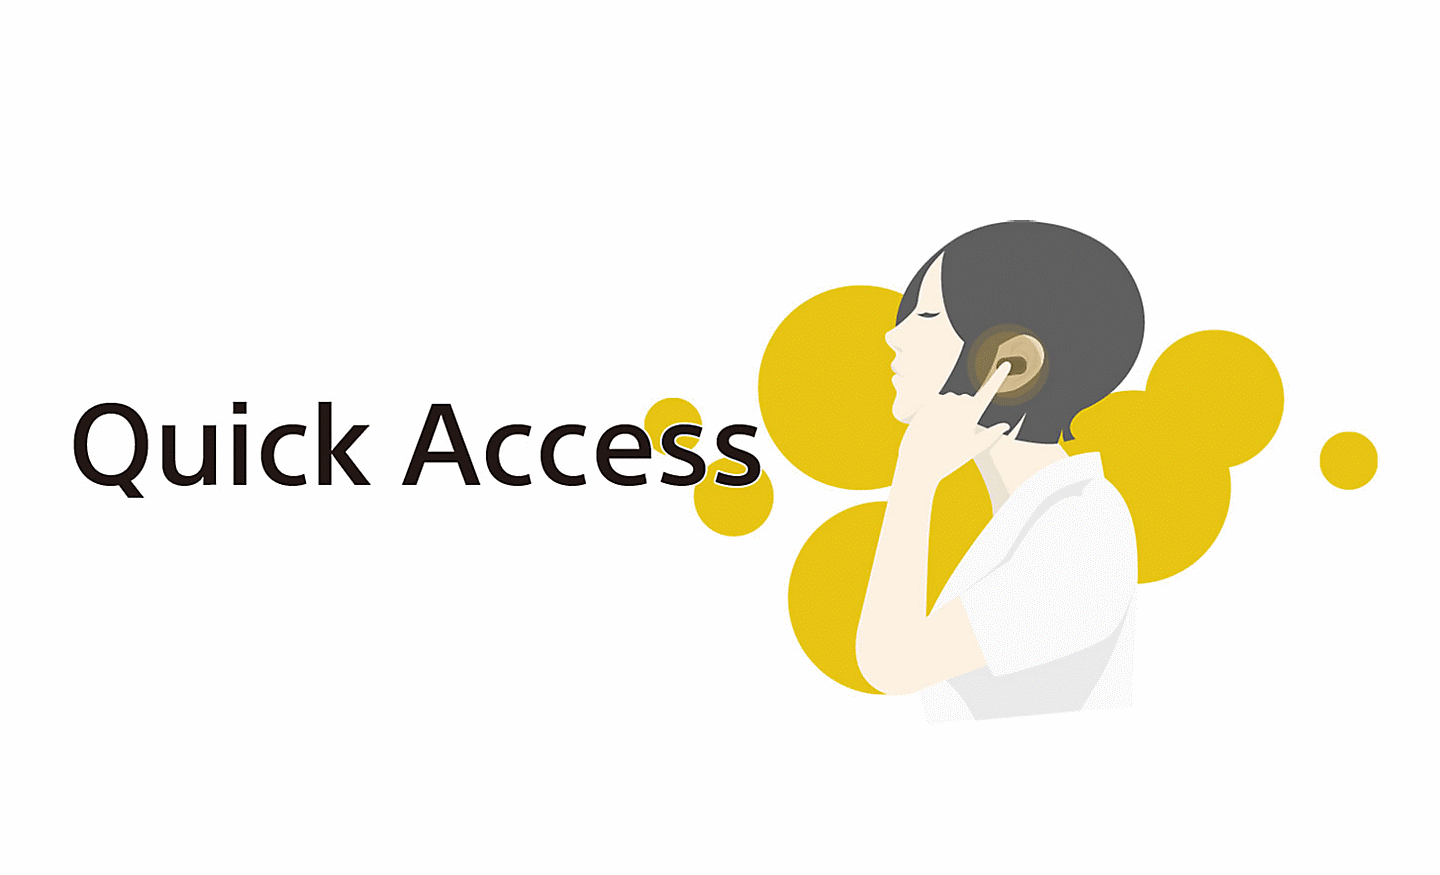 Abbildung einer Person, die ihren Ohrstöpsel mit einem Finger berührt, und dem Text „Quick Access“ links